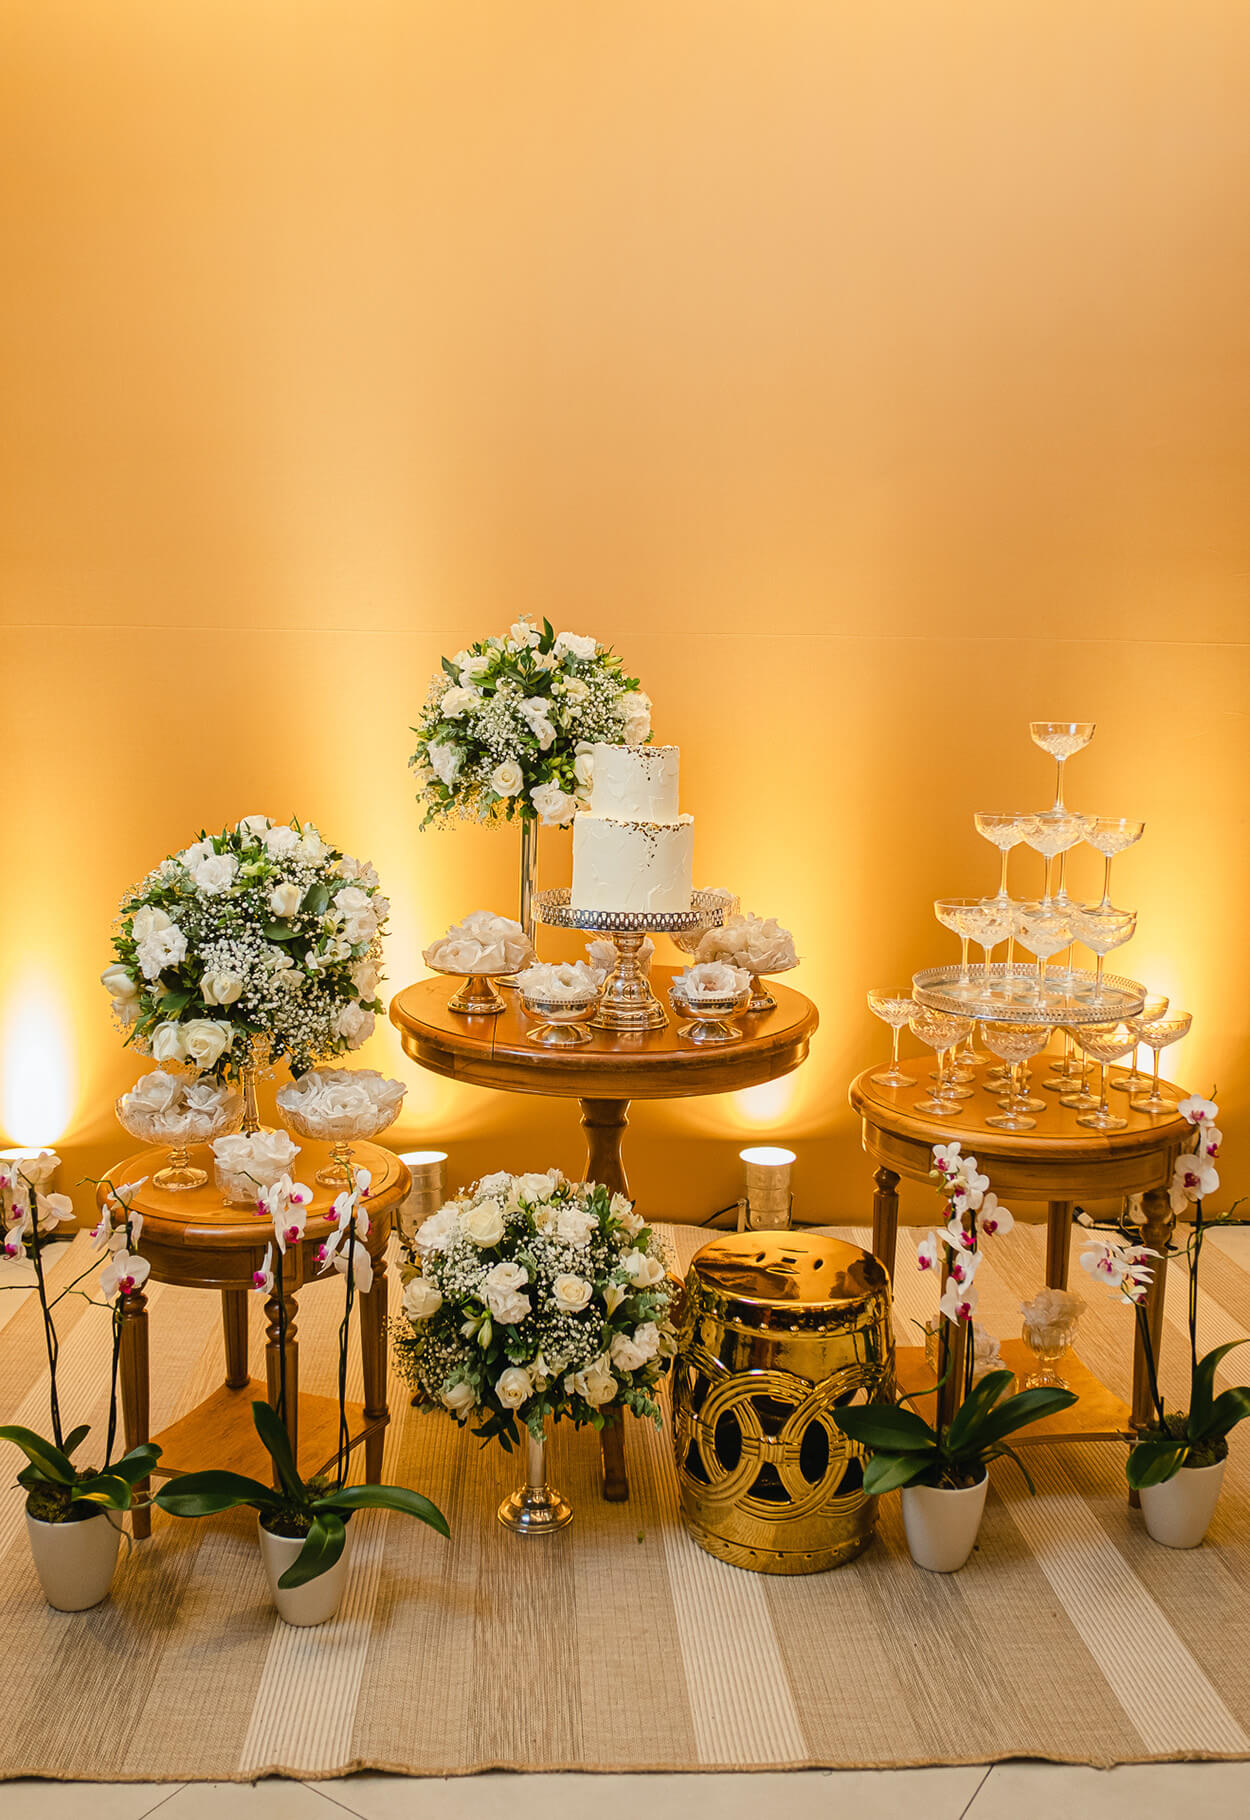 Mesas redondads com bolo de casamento, tlas e arranjos ocm flores brancas